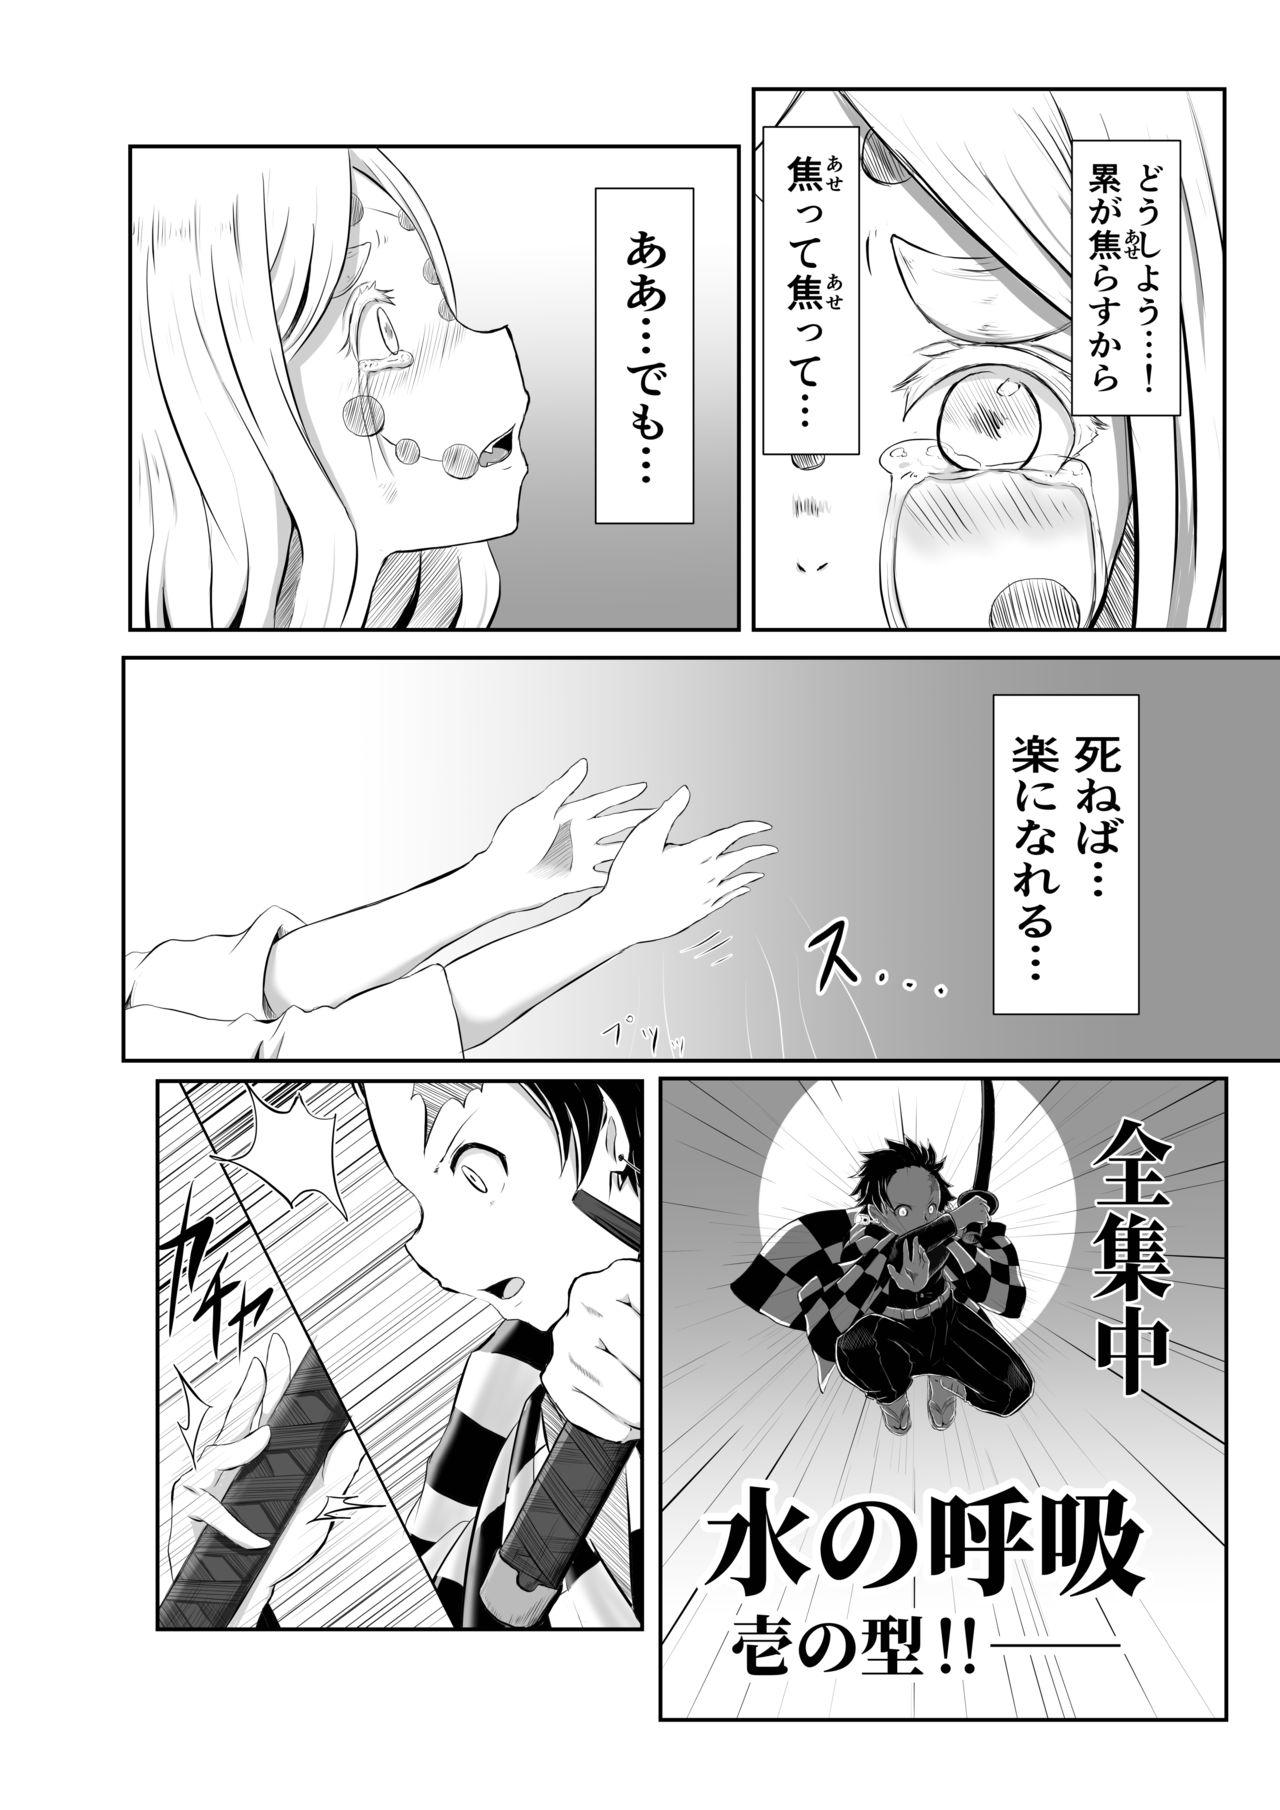 Stepfather Hinokami Sex. - Kimetsu no yaiba | demon slayer Toy - Page 2